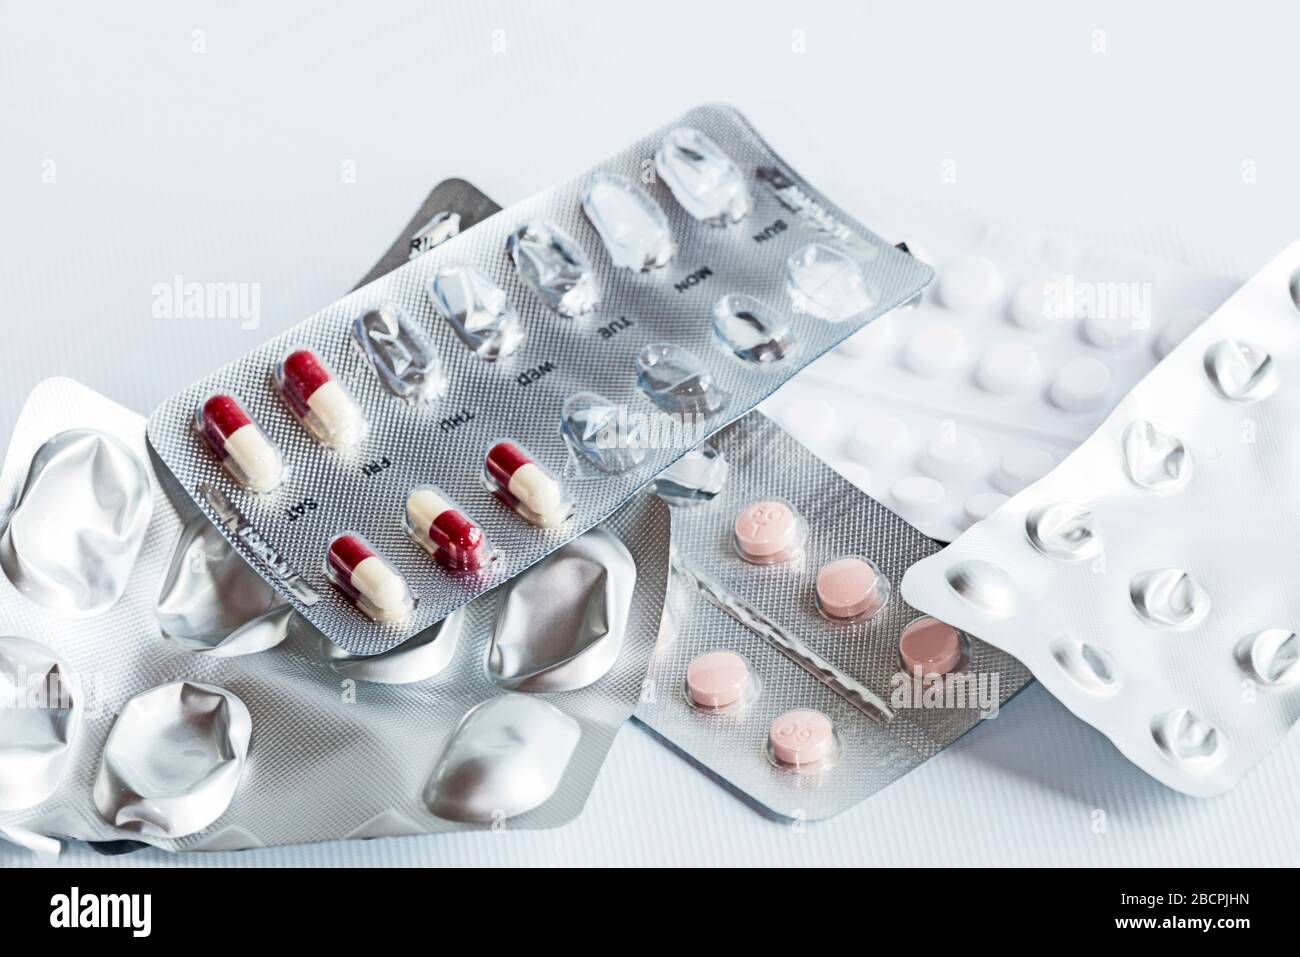 Fünf Packungen verschiedener Medikamente, die nach einem Herzinfarkt (Myokardinfarkt) in silberfarbenen Folienstreifen verschrieben wurden, zufällig ausgelegter, weißer Hintergrund. Stockfoto